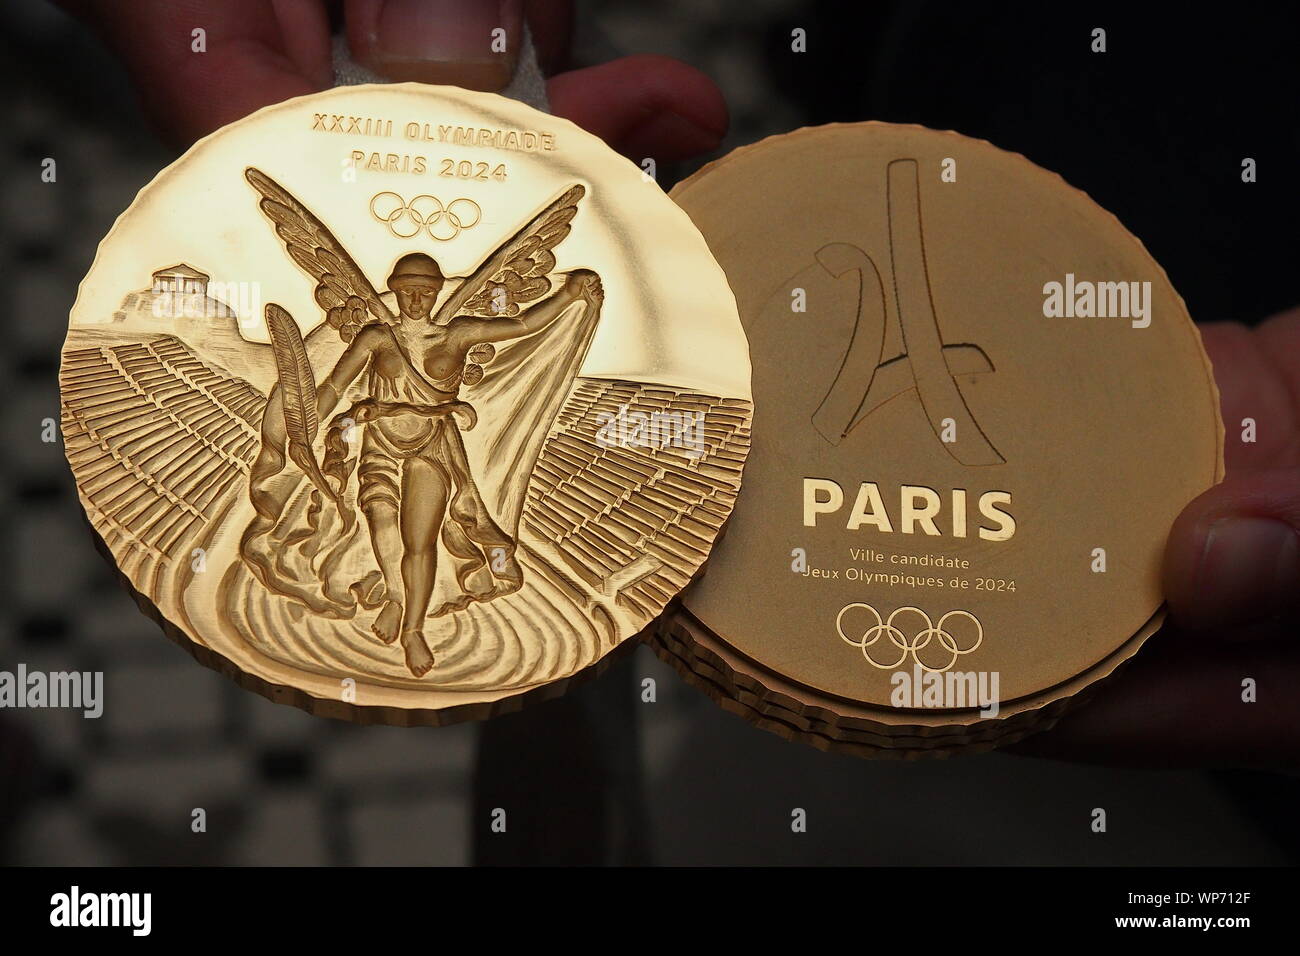 Modelo de las medallas de oro que se utilizará en los Juegos Olímpicos